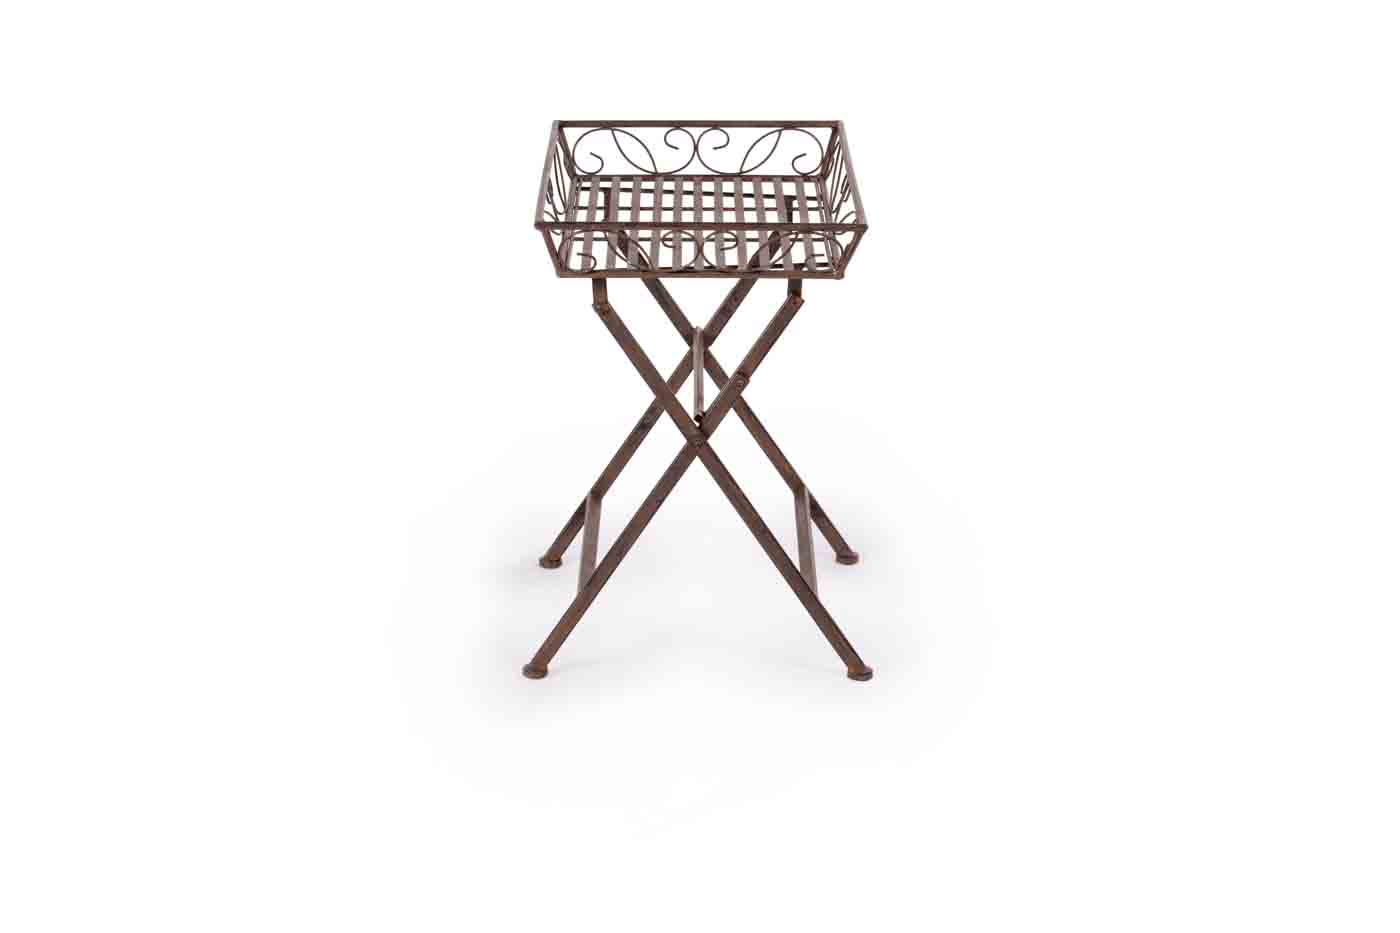 Gartentisch Melanie aus lackiertem Metall in einem klassischen Design. Outdoor geeignet. Farbe Braun. Marke Bizotto.